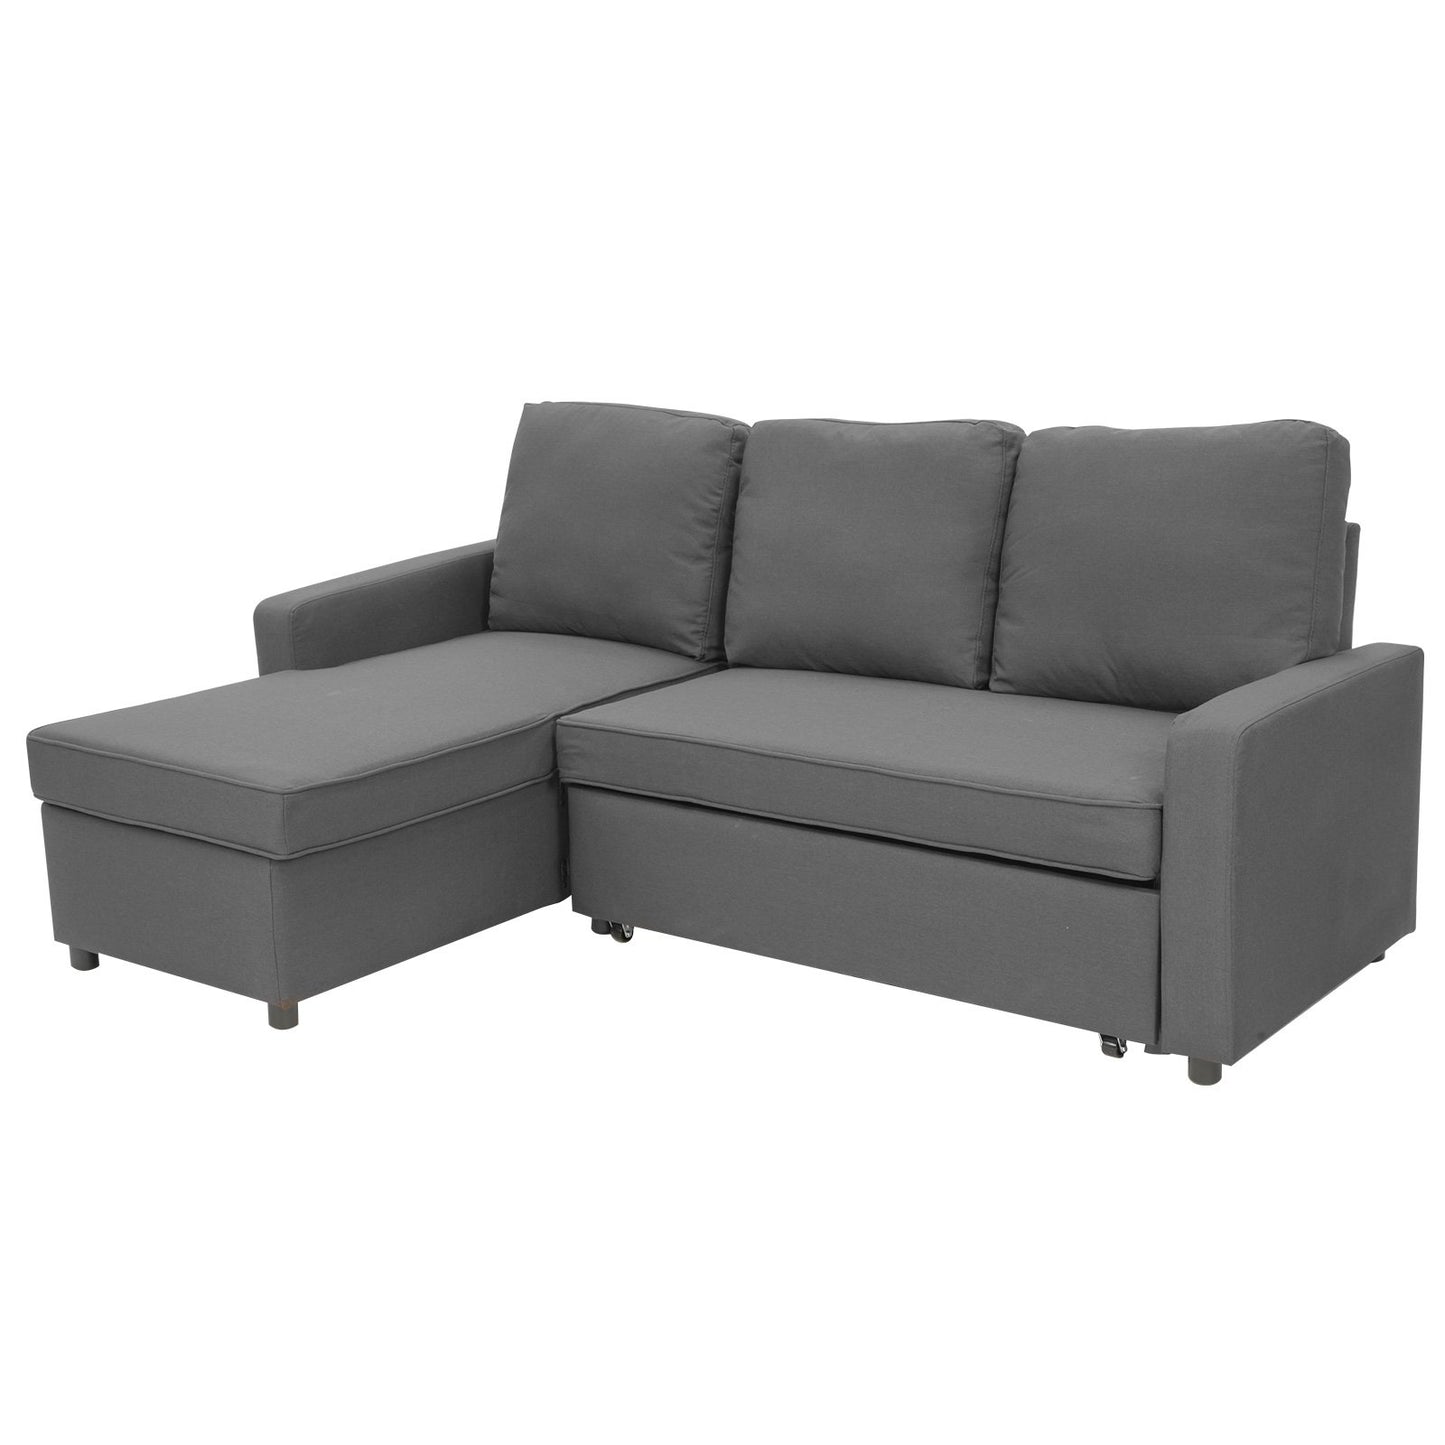 Sarantino 3 Seater Corner Sofa Bed Storage Chaise - Grey